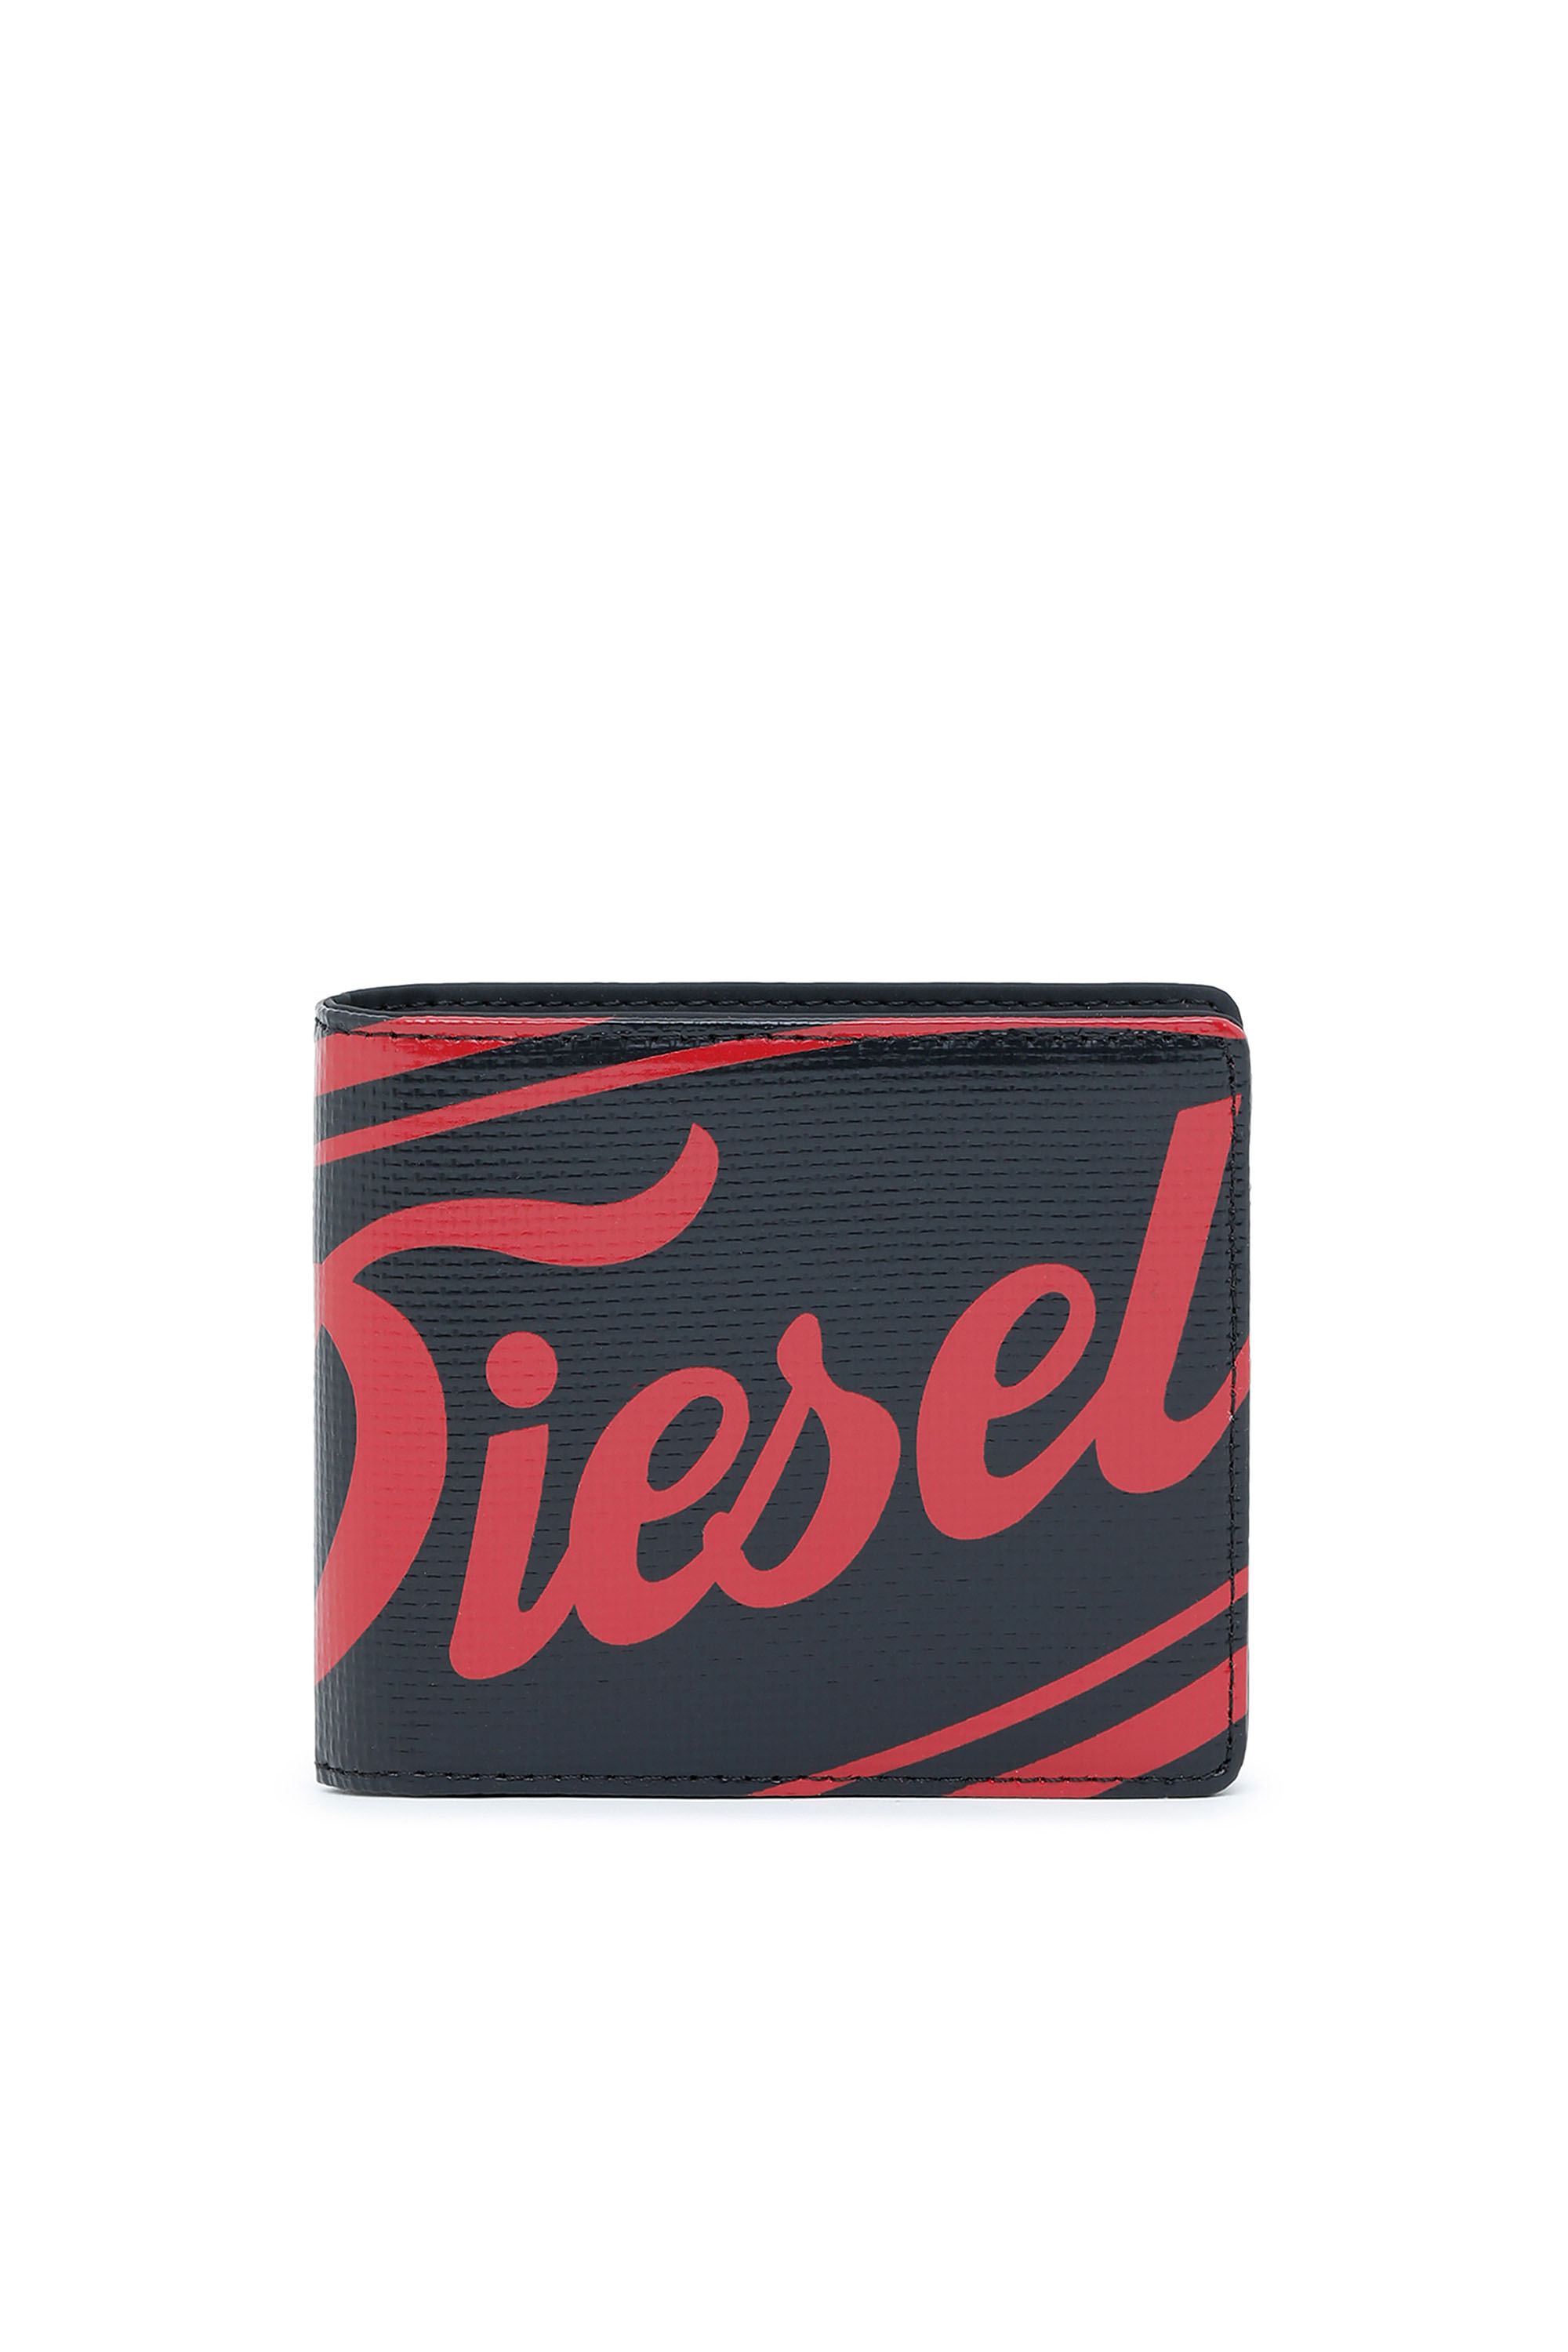 Diesel - HIRESH S, Negro - Image 1